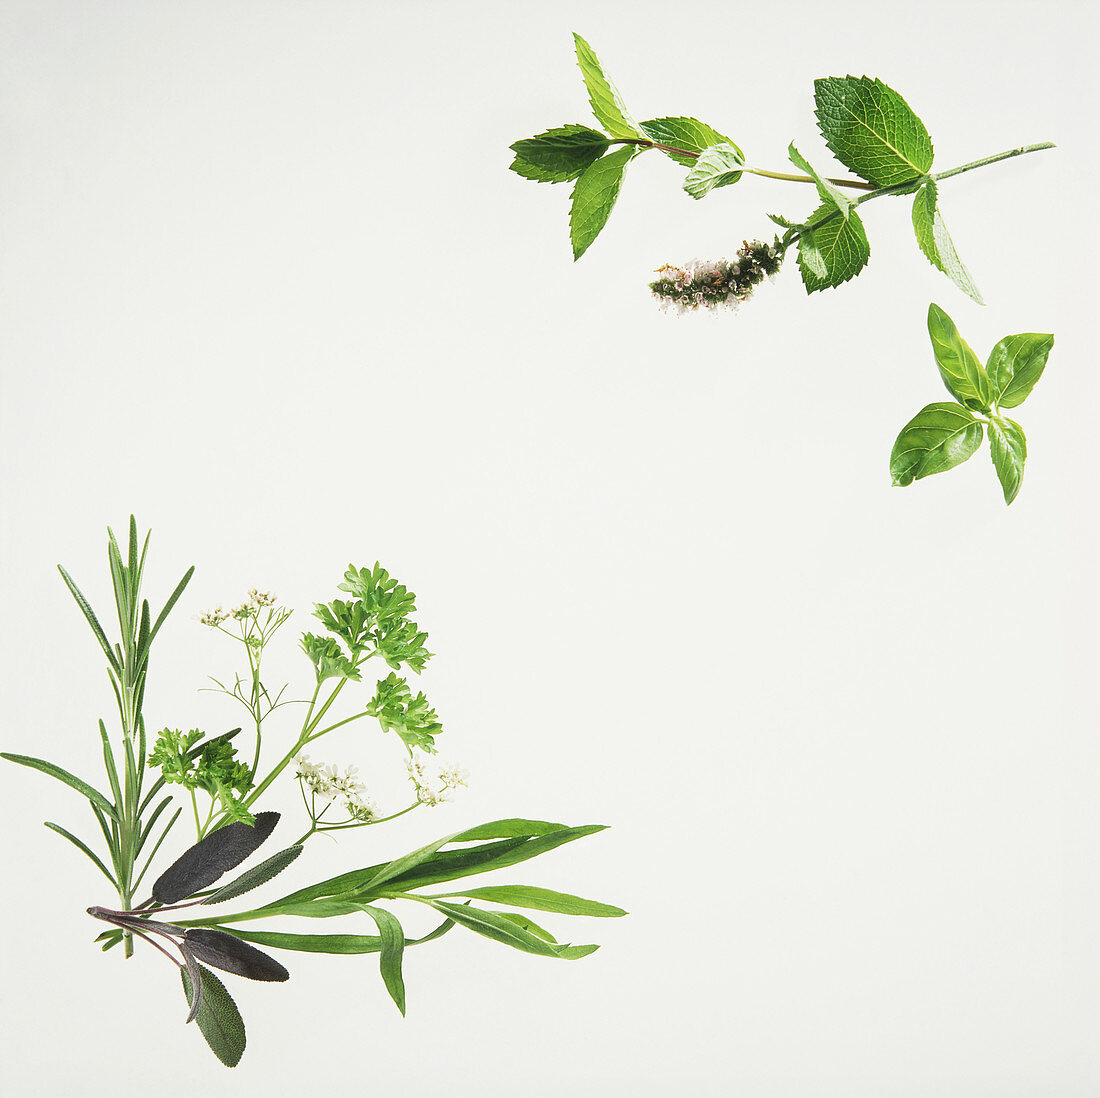 Fresh herb arrangement